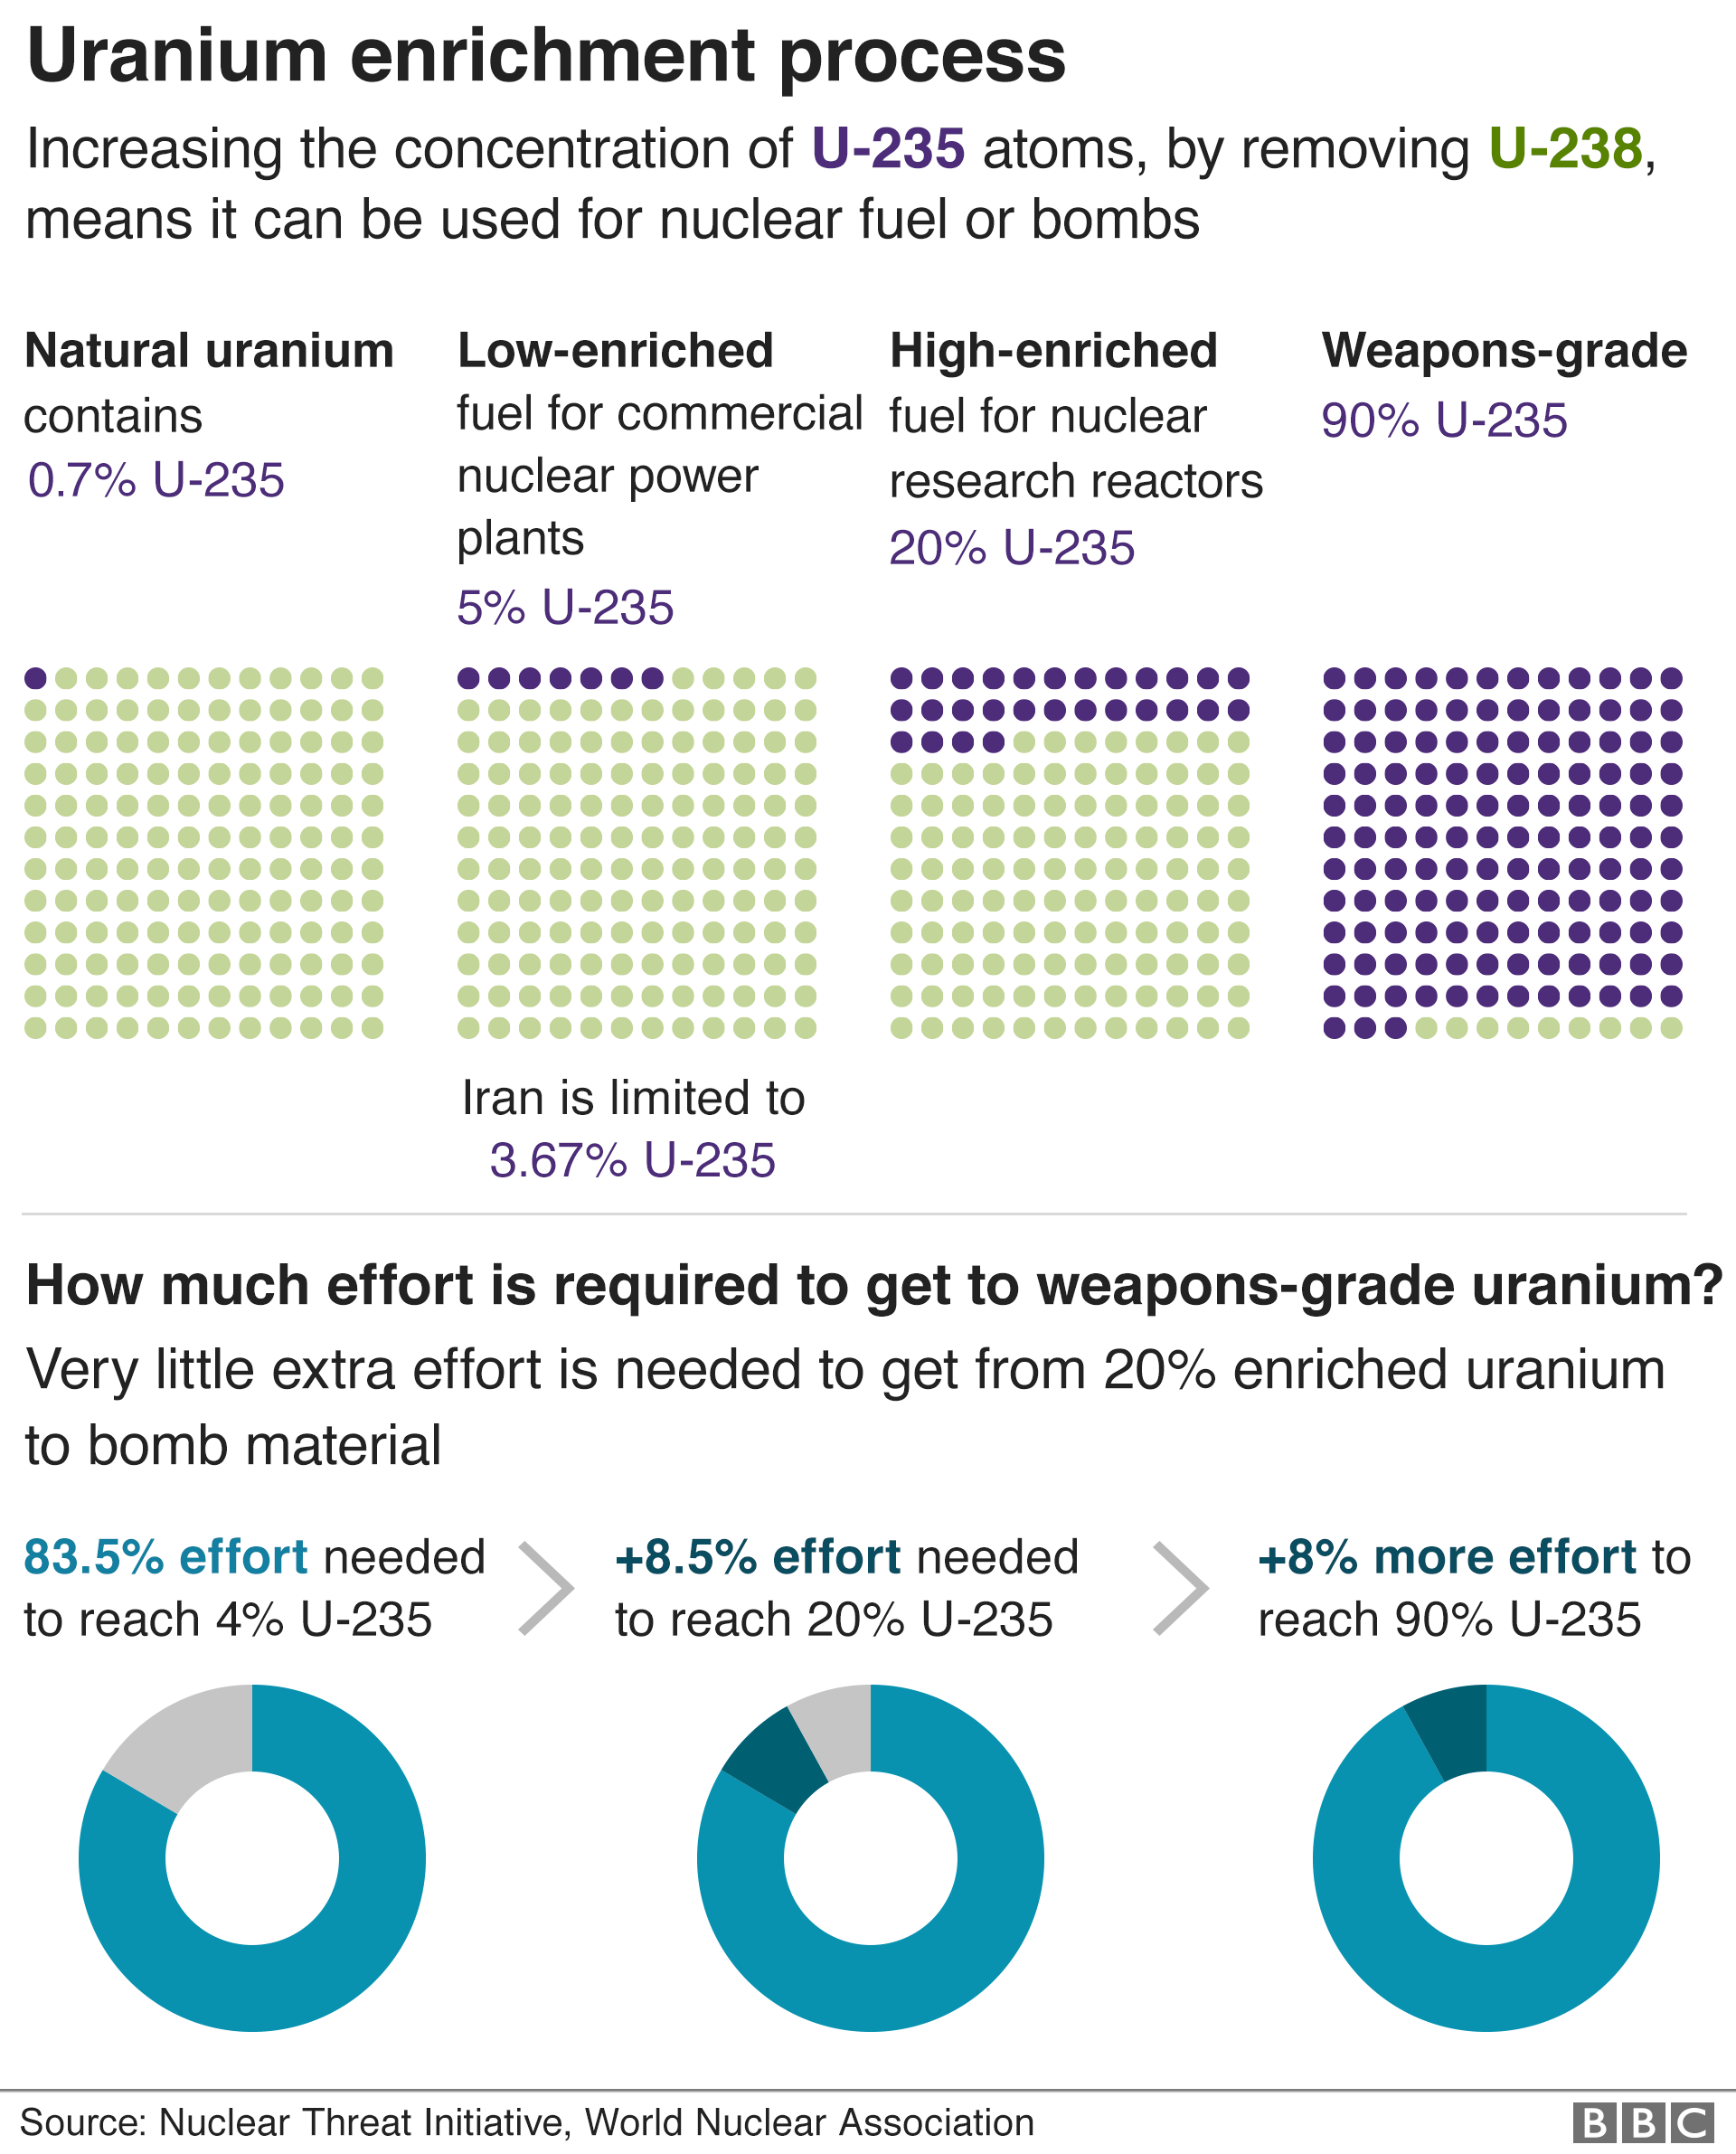 Uranium enrichment process chart